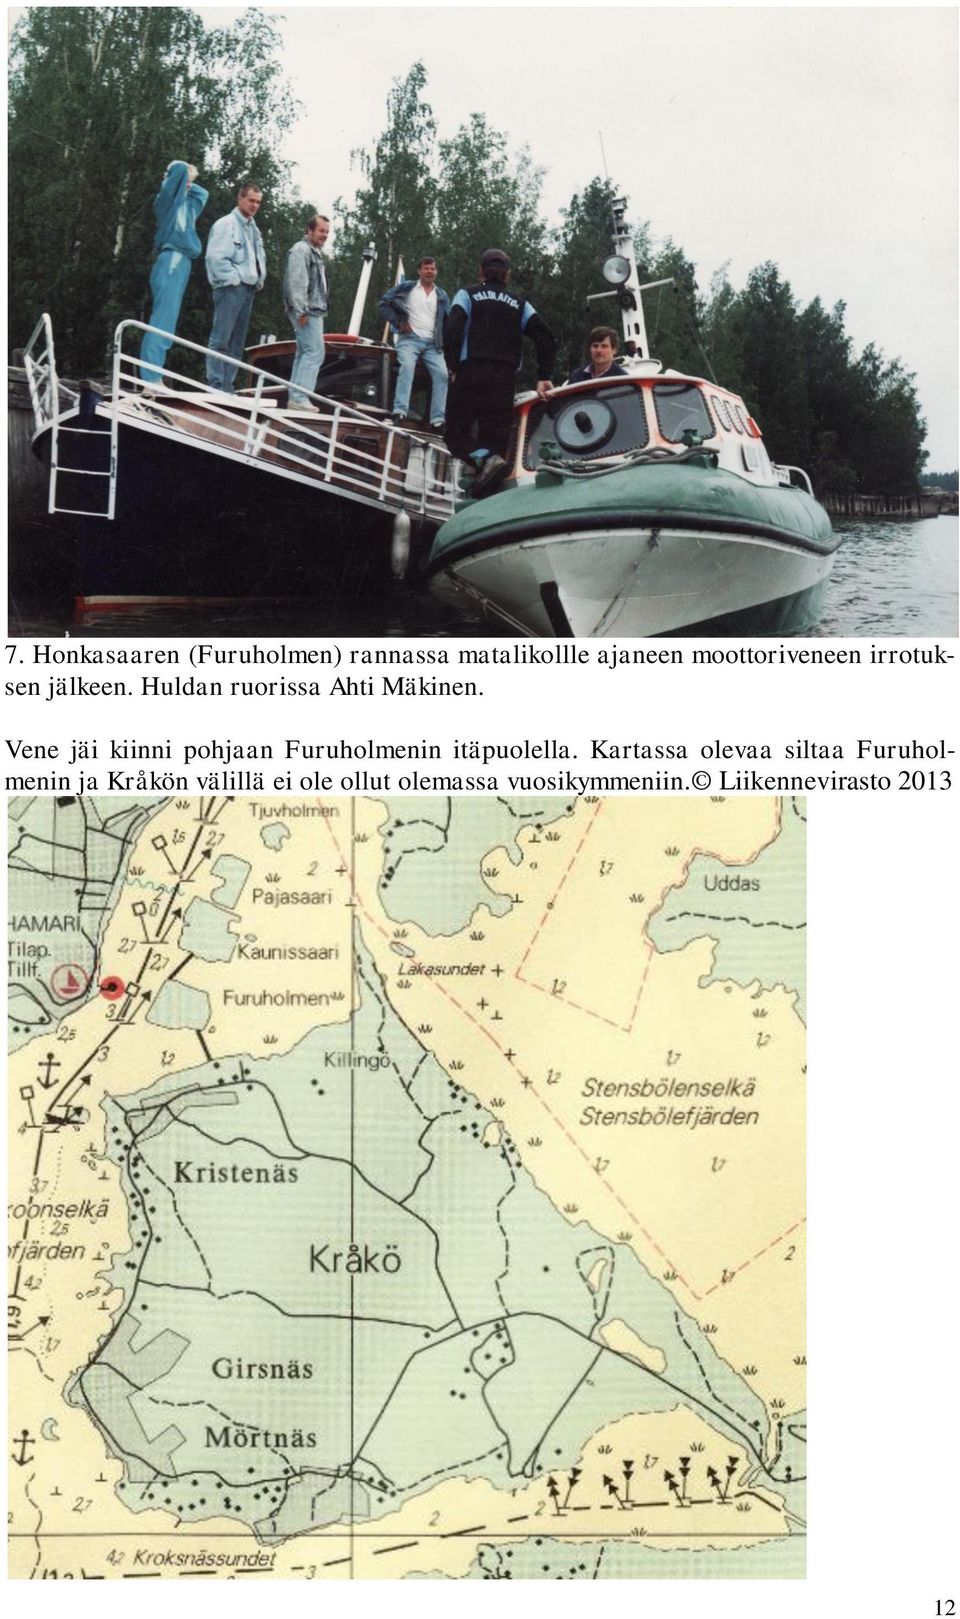 Vene jäi kiinni pohjaan Furuholmenin itäpuolella.